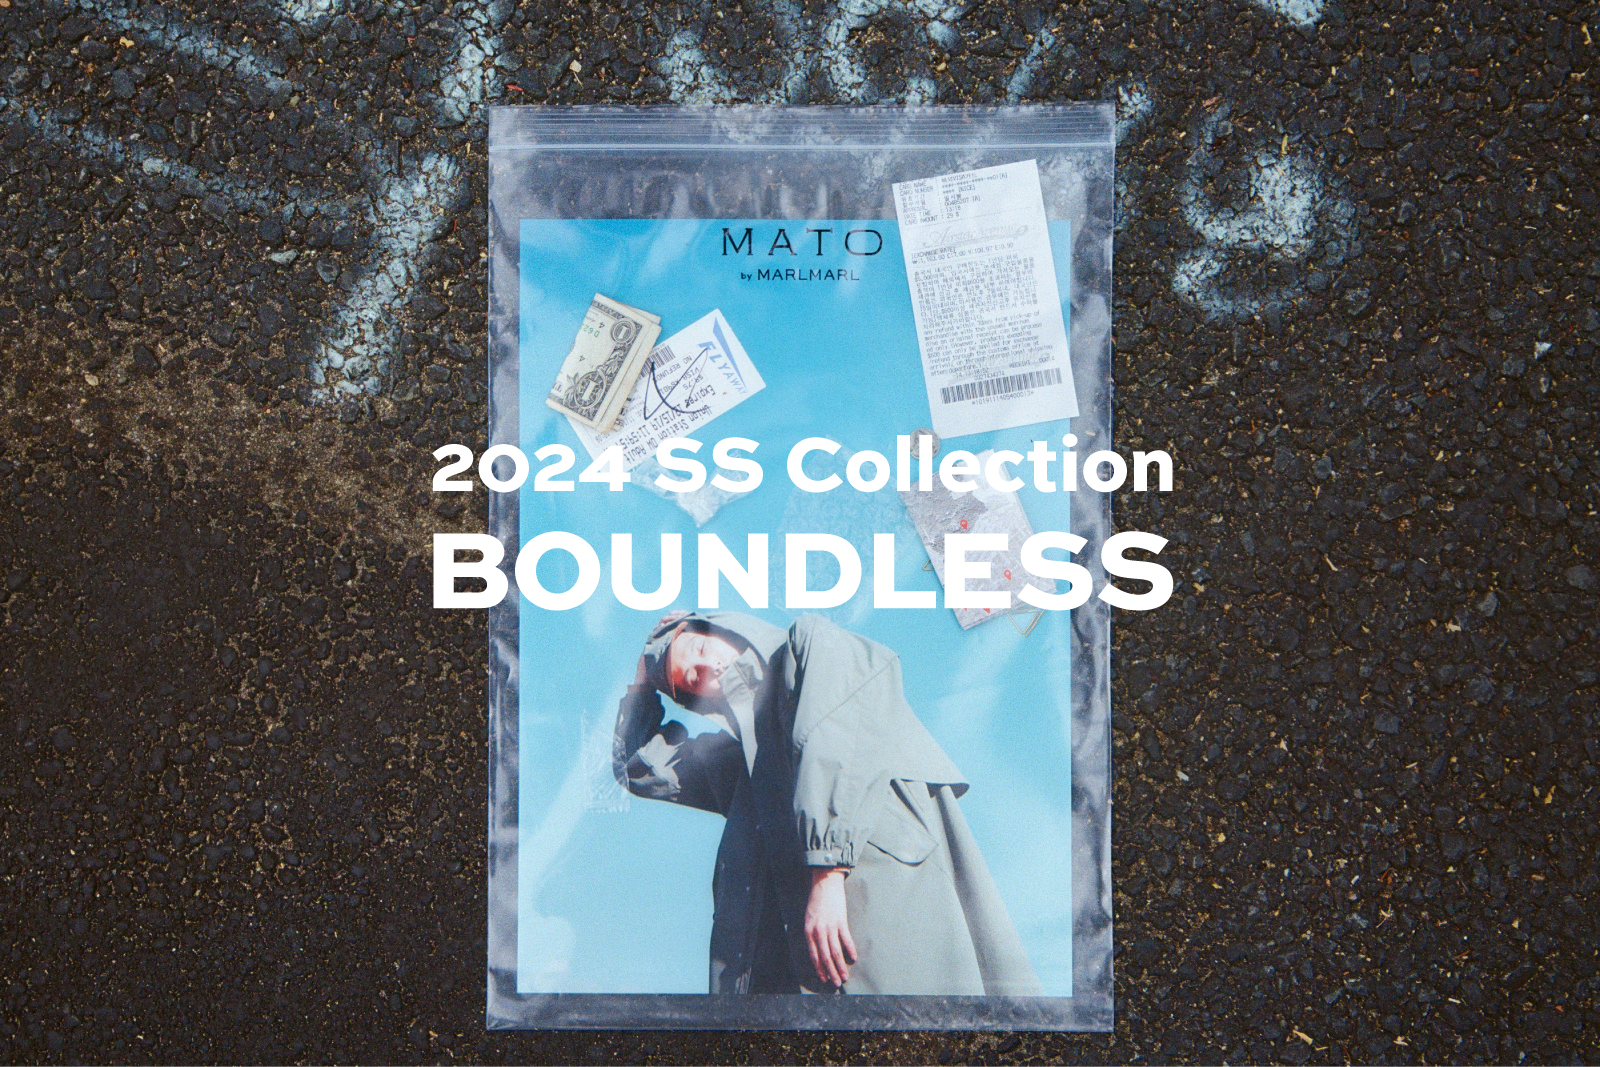  テーマは「BOUNDLESS」。2024 SSコレクションリリース